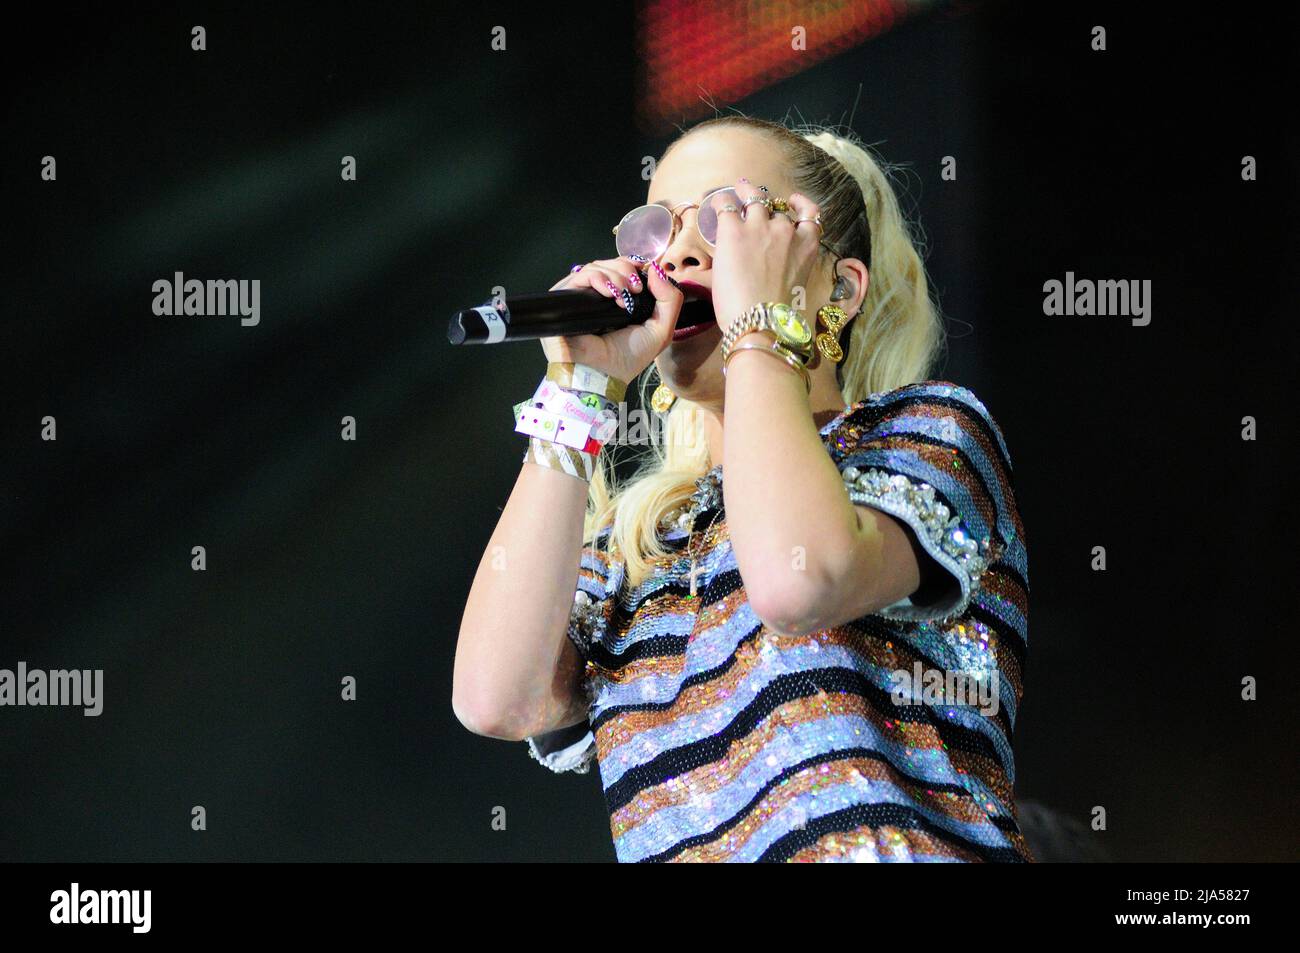 Vienna, Austria. June 29, 2014. Rita Ora at Danube Island Festival in Vienna Stock Photo